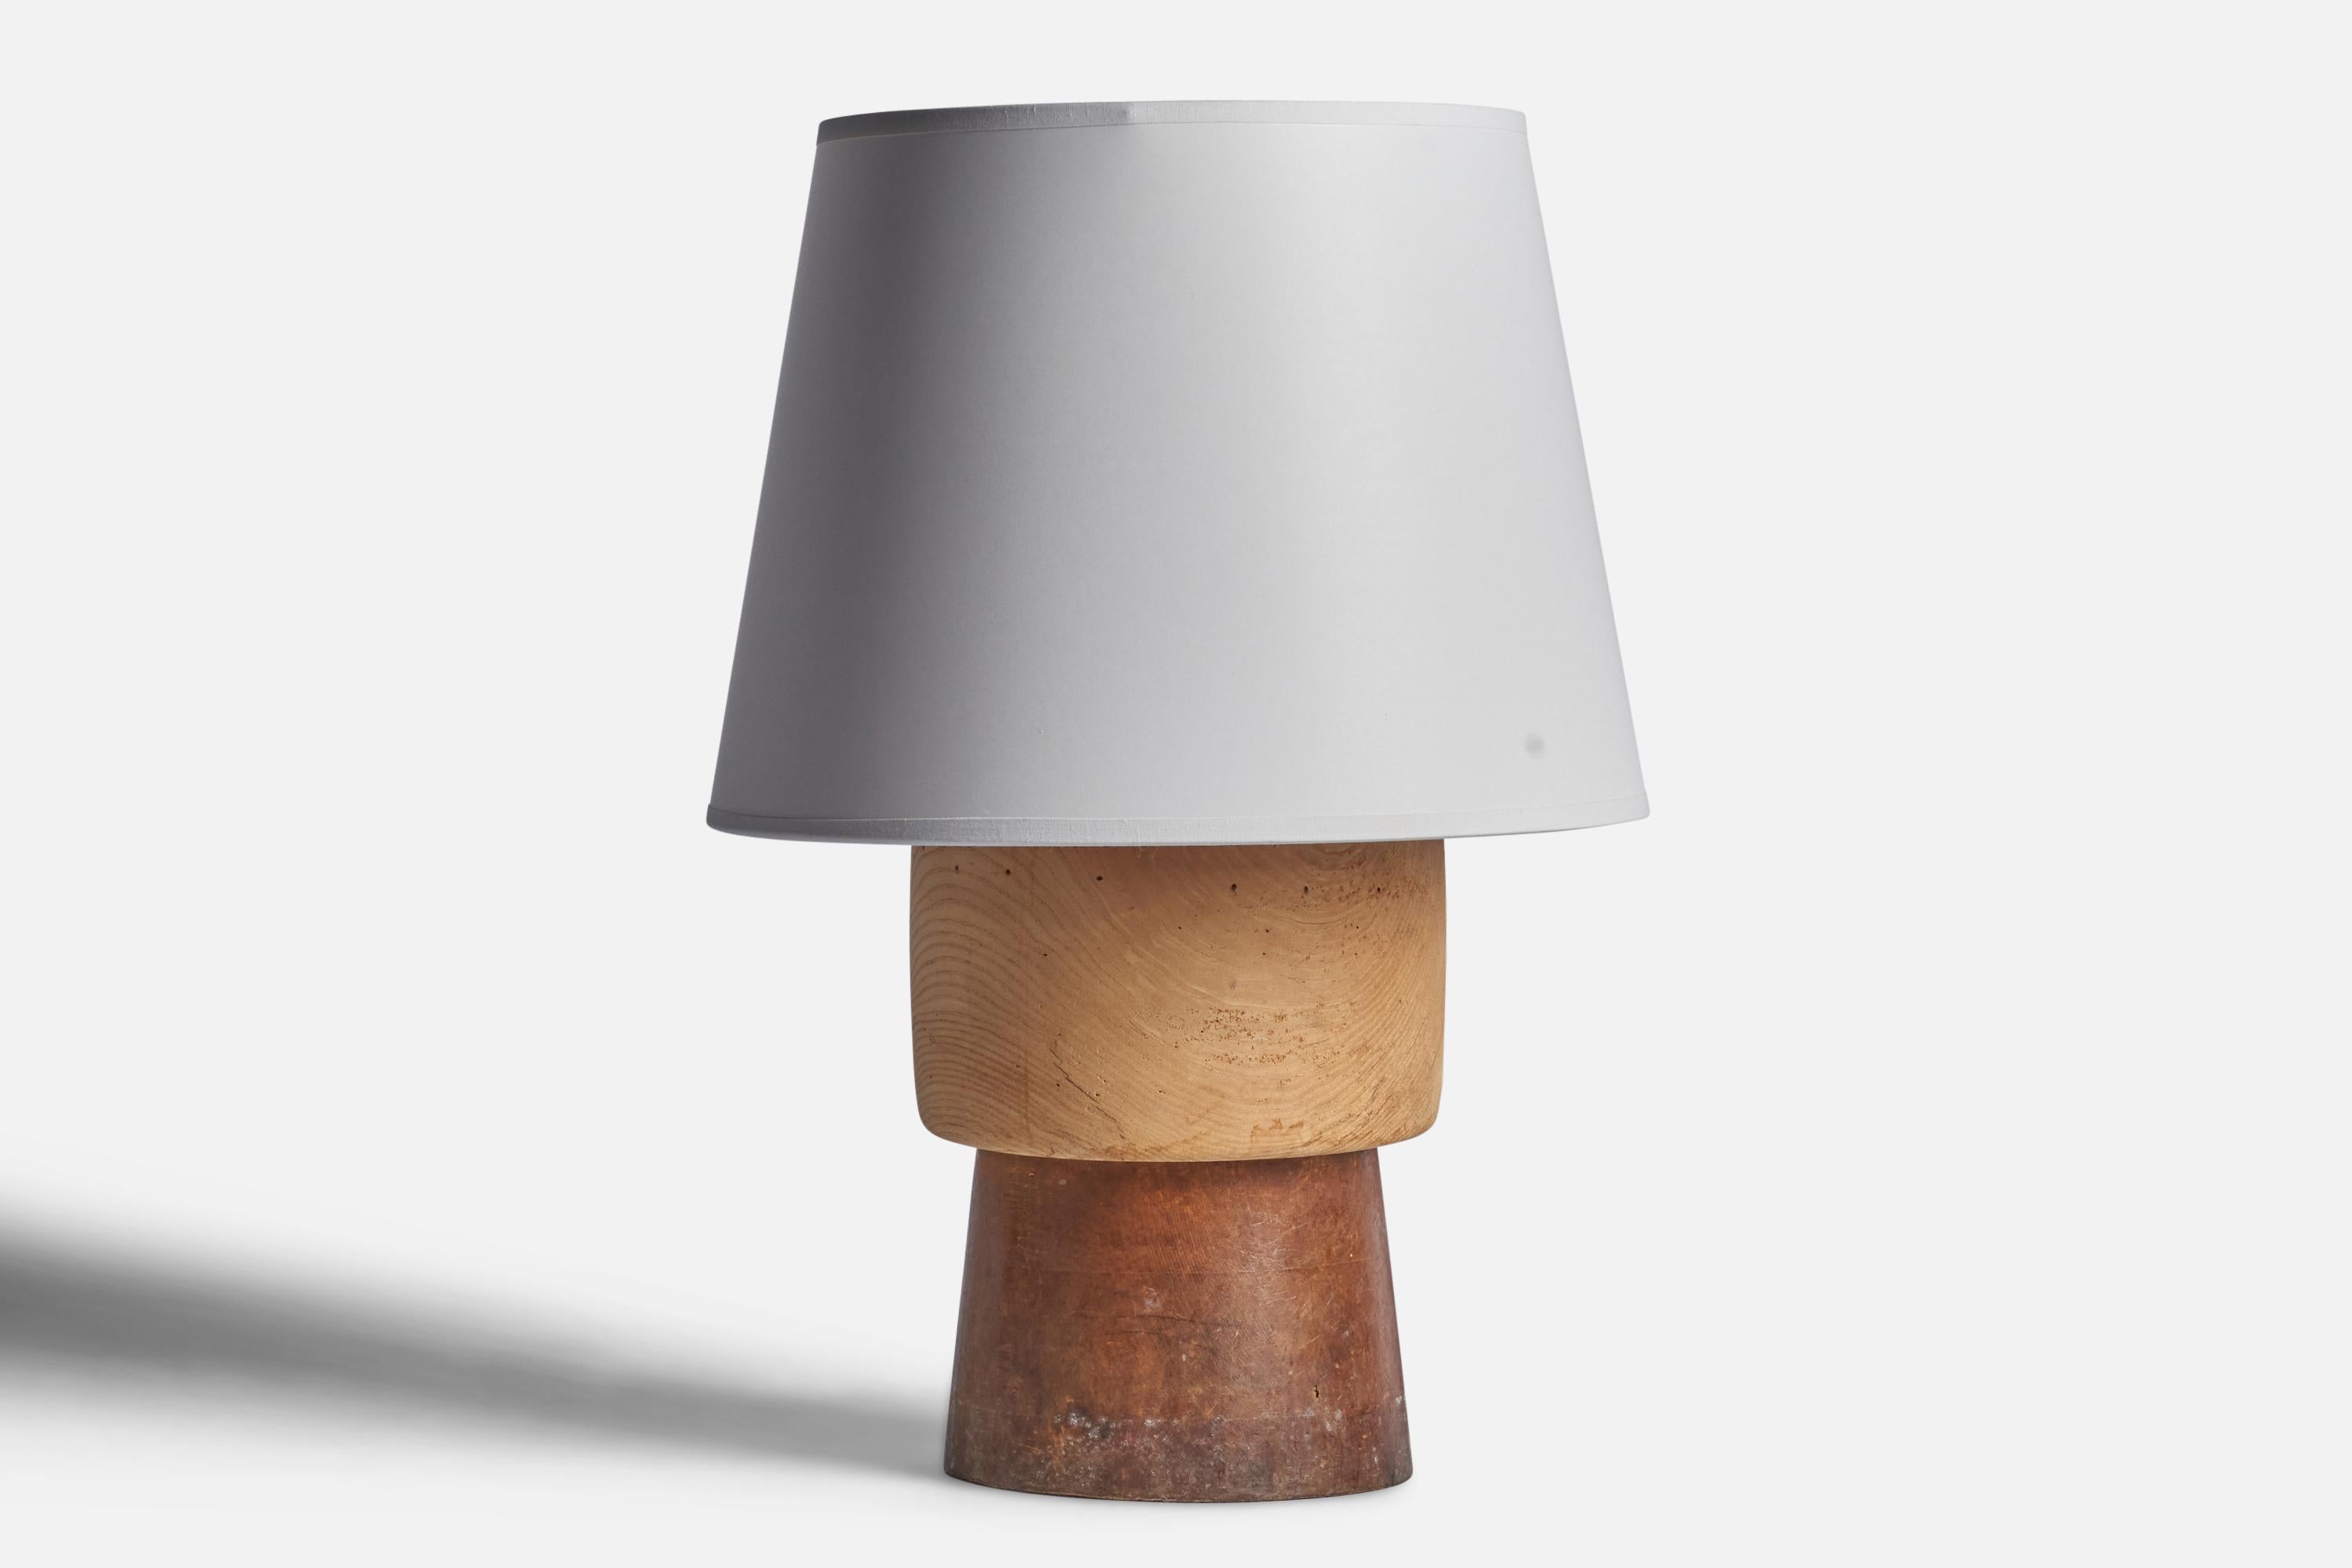 Lampe de table en bois conçue et produite en Suède, années 1940.

Dimensions de la lampe (pouces) : 12